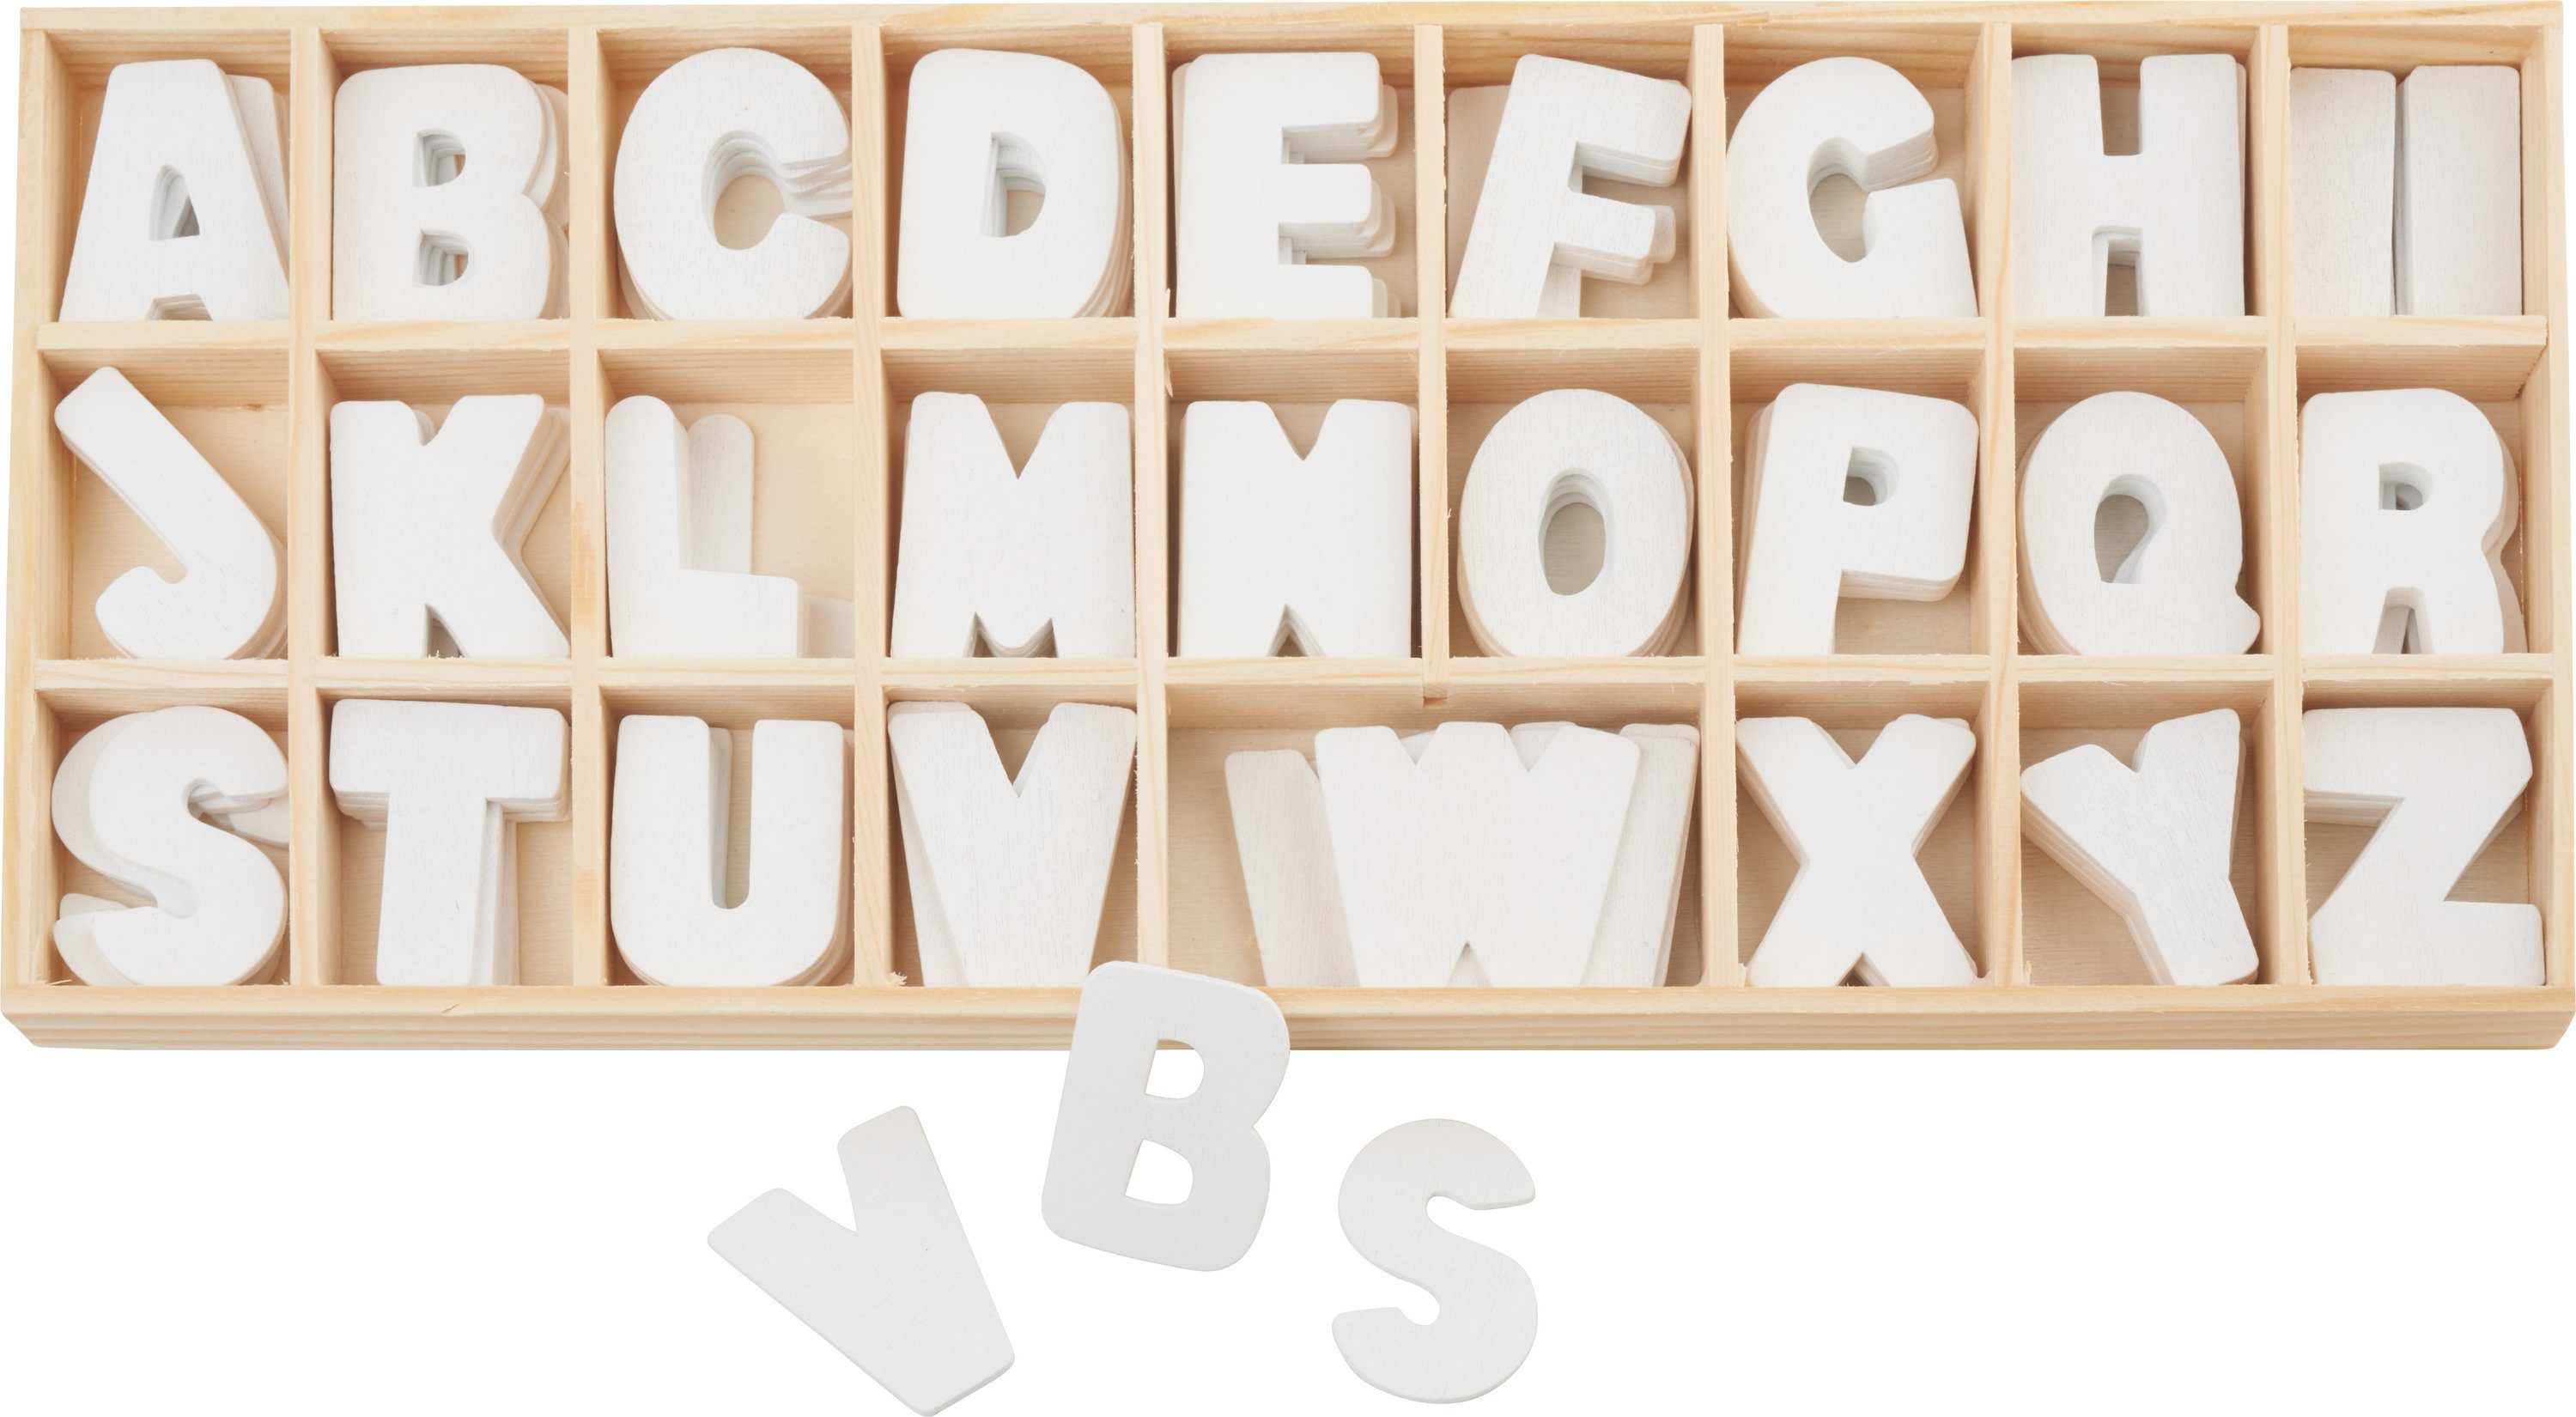 Buchstabensortiment Holz, 156 VBS Buchstaben weiße Deko-Buchstaben